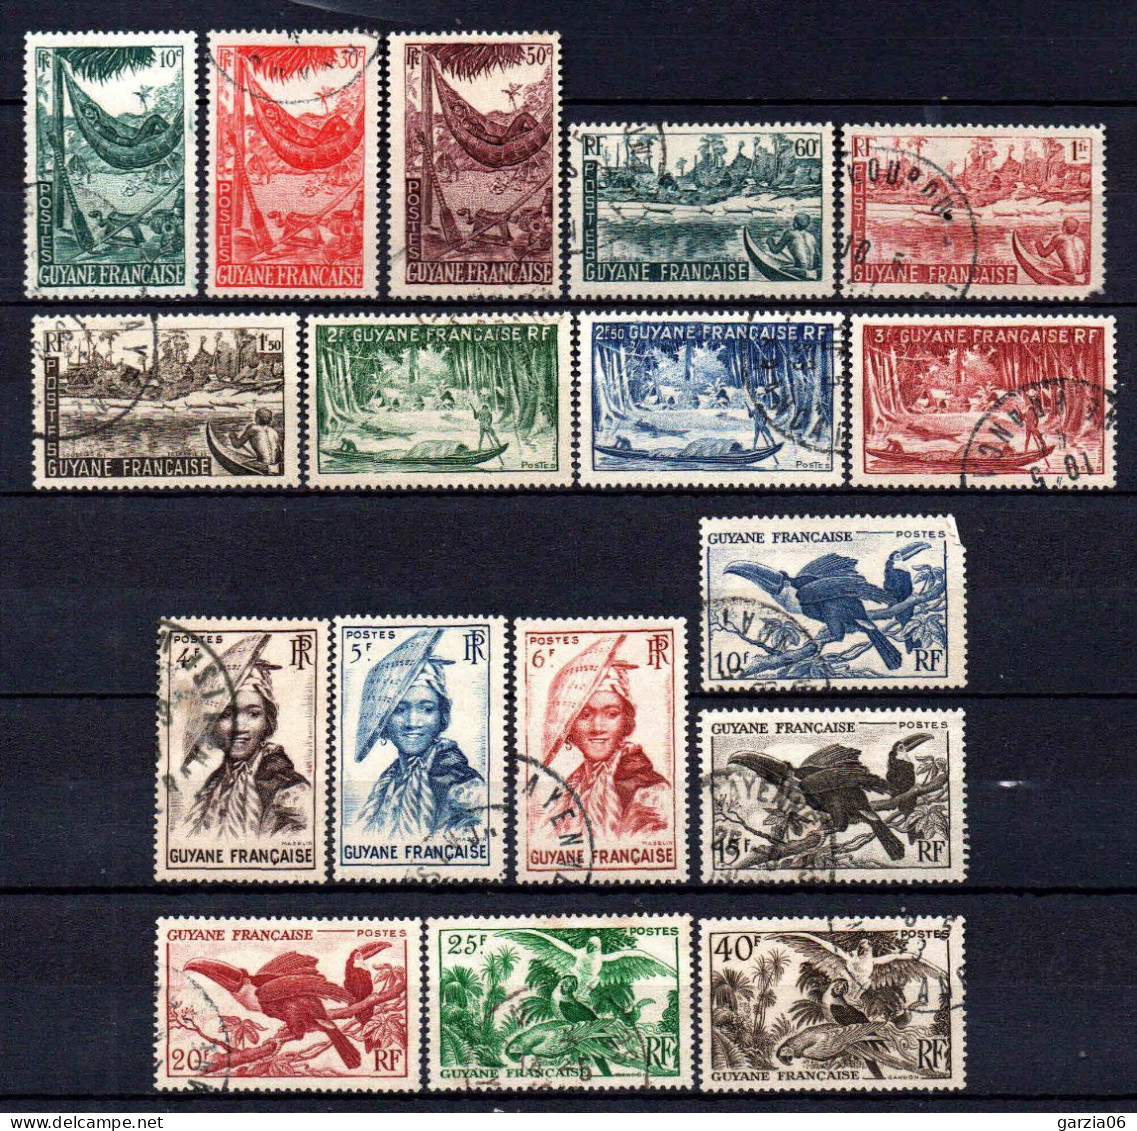 Guyane - 1947 -  Aspects De La Guyane   -  N° 201 à 217  - Oblit - Used - Used Stamps